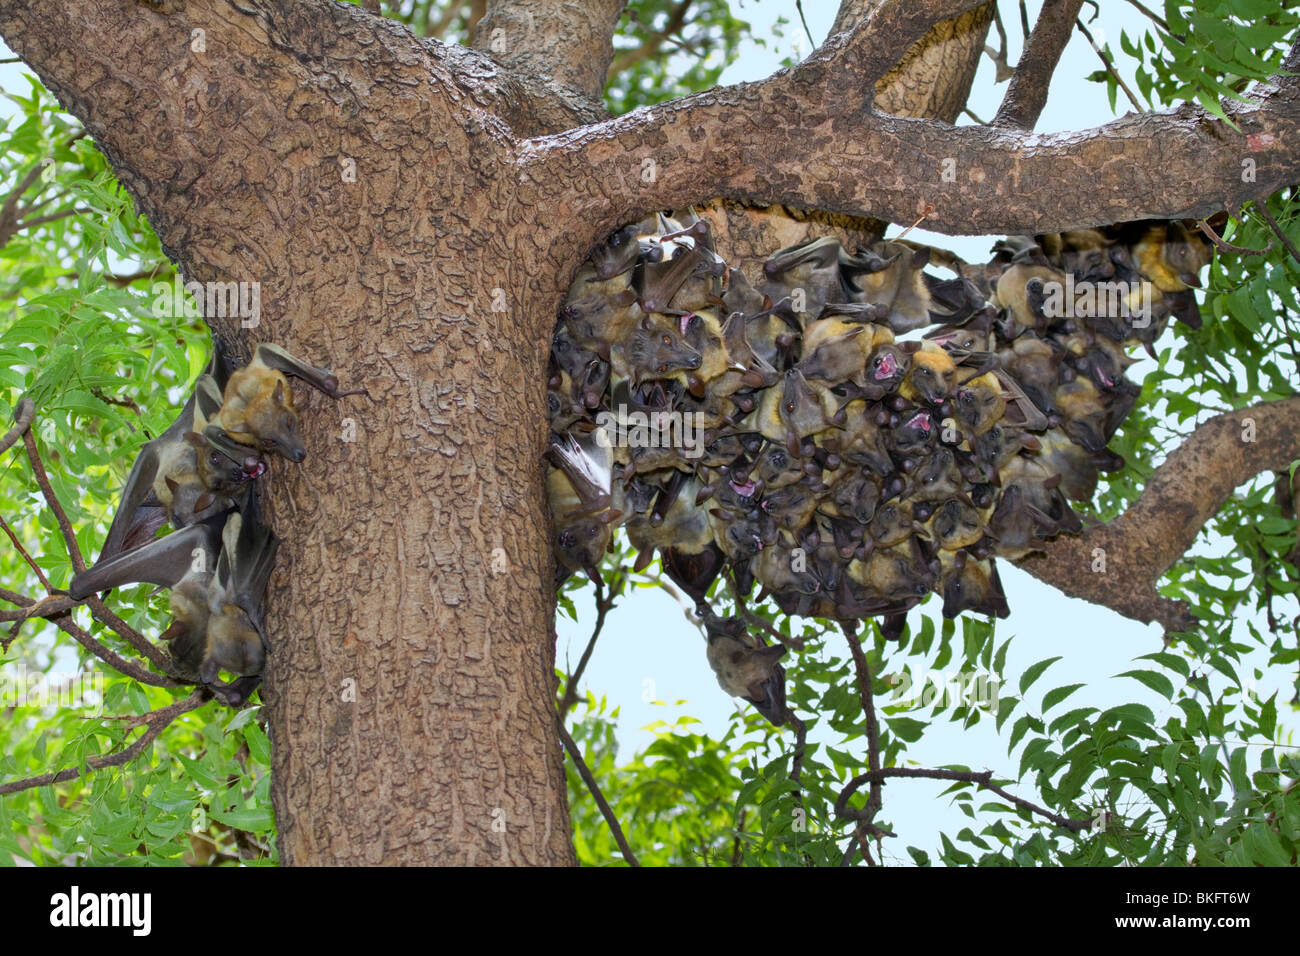 Eine Kolonie von afrikanischen strohfarbenen Fruchtfledermäusen (Eidolon helvum) in einem Baum, Kamerun Stockfoto